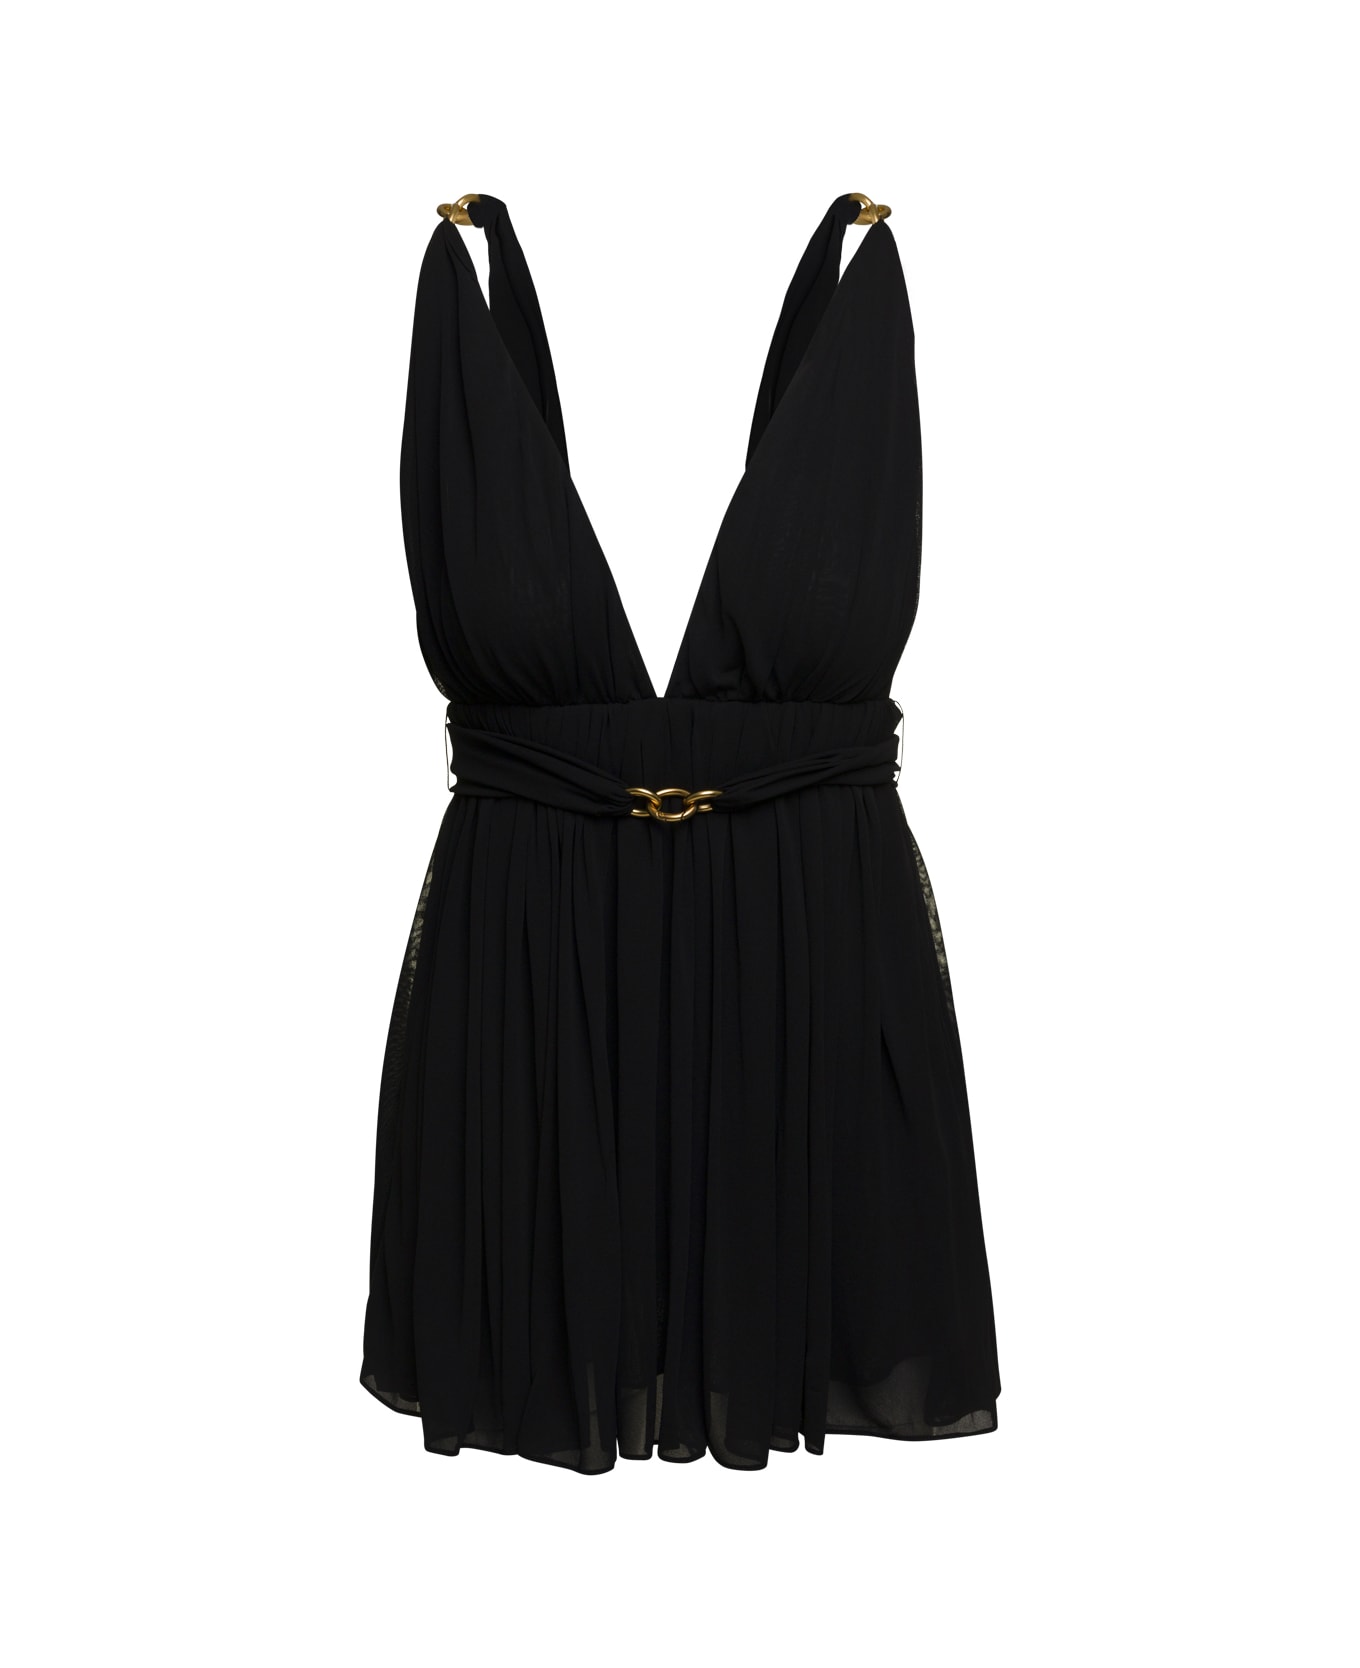 Saint Laurent Drape Mini Dress With Chain Details - Black